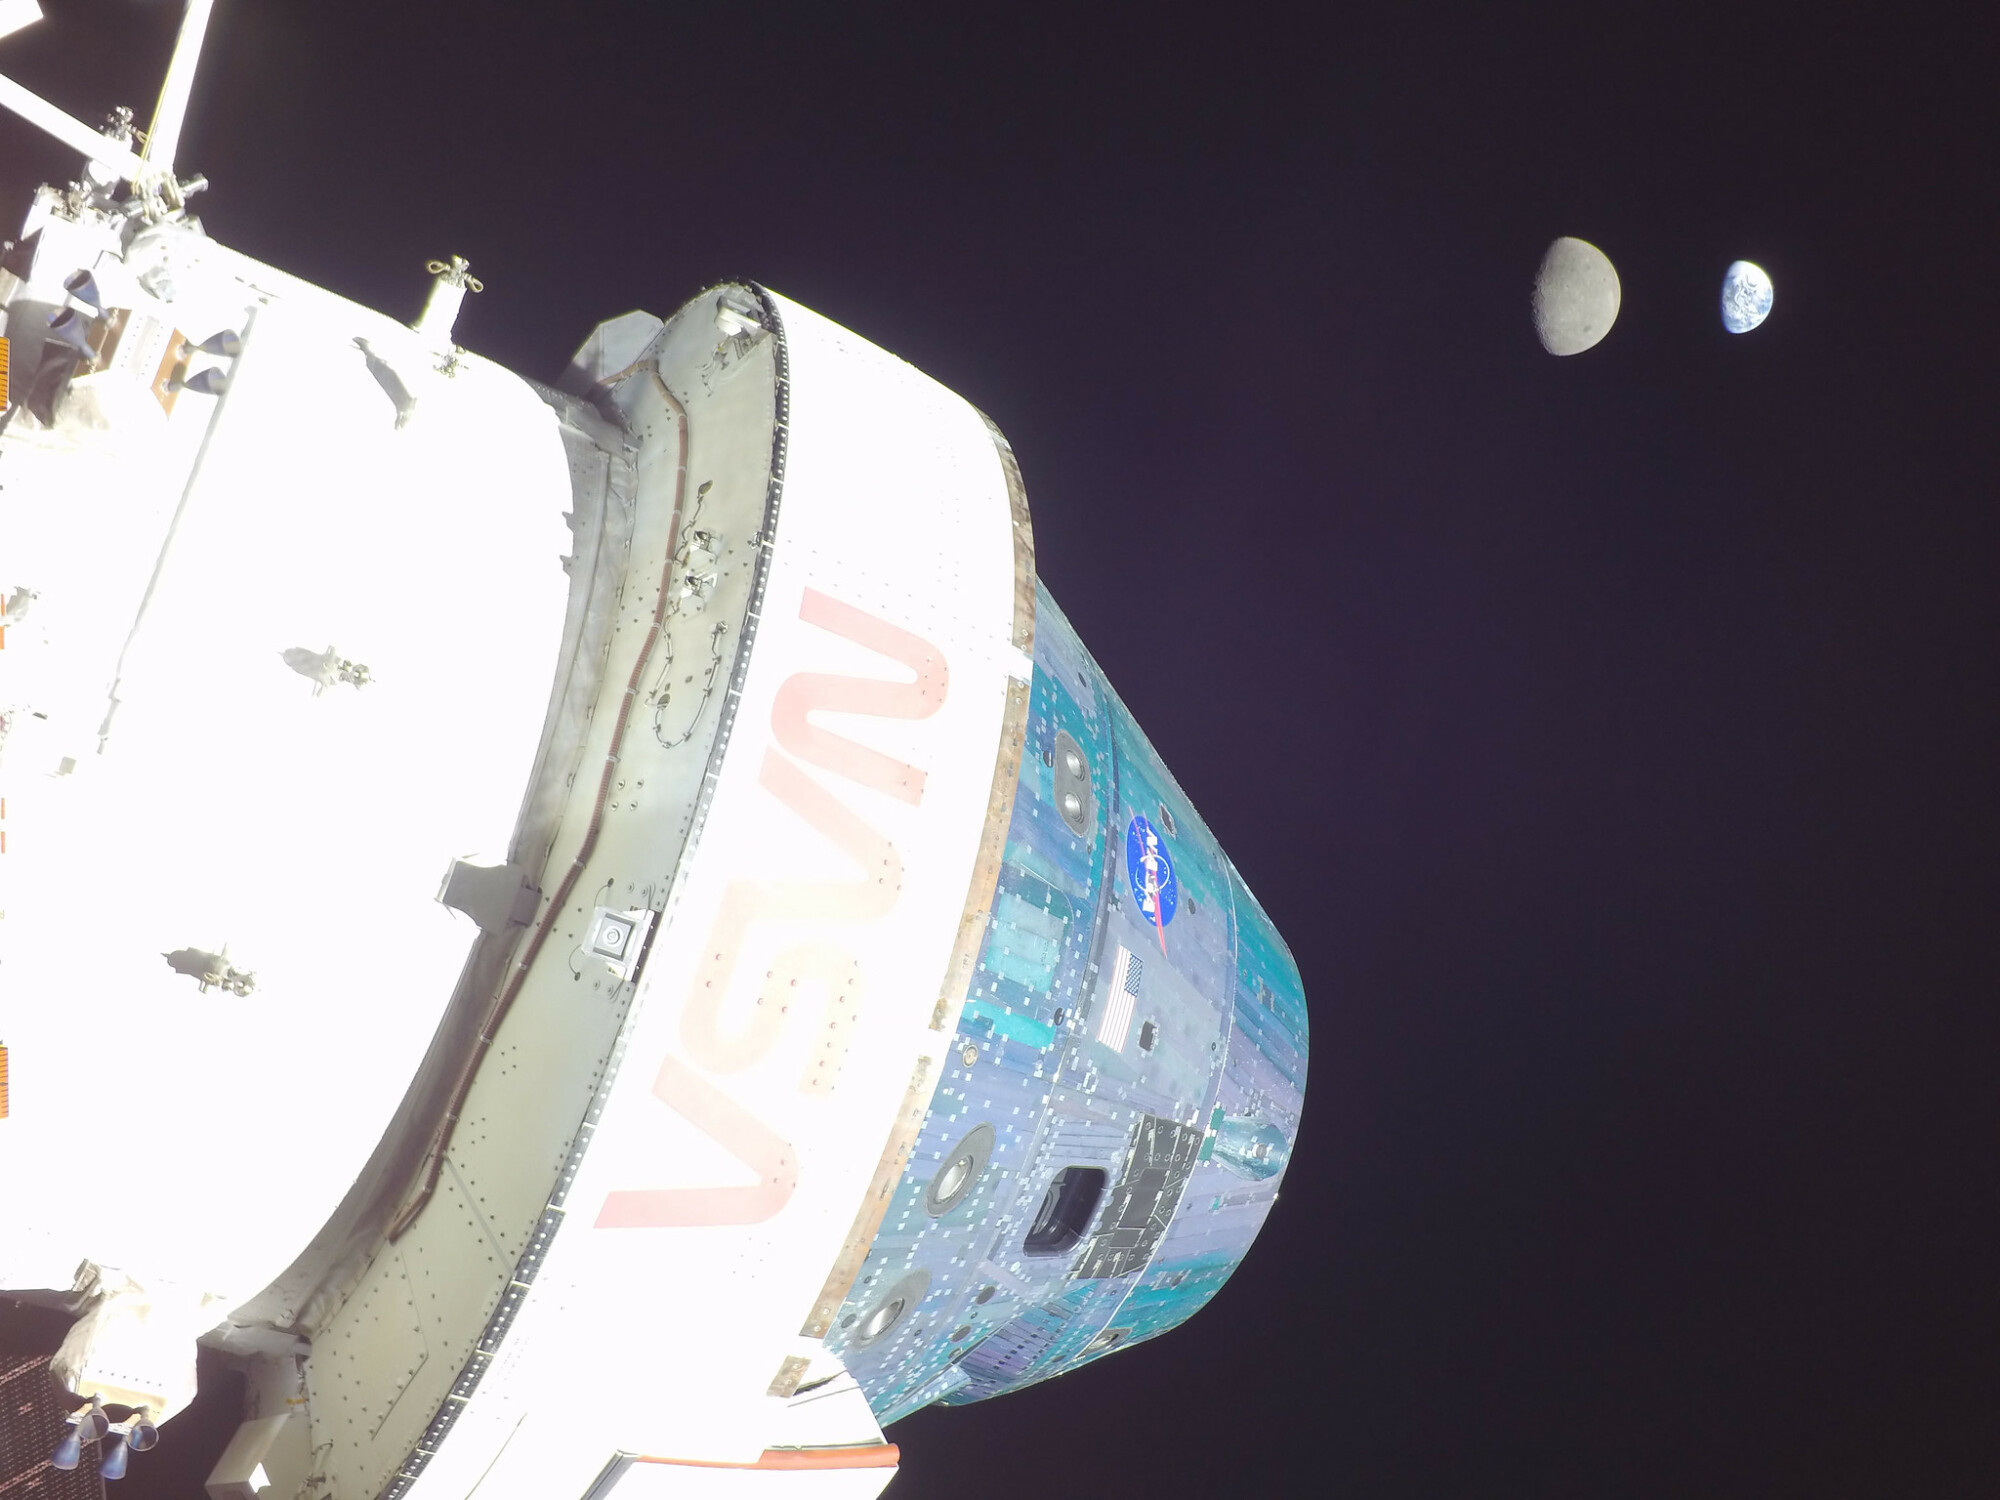 le vaisseau spatial Orion avec la lune et la terre au loin